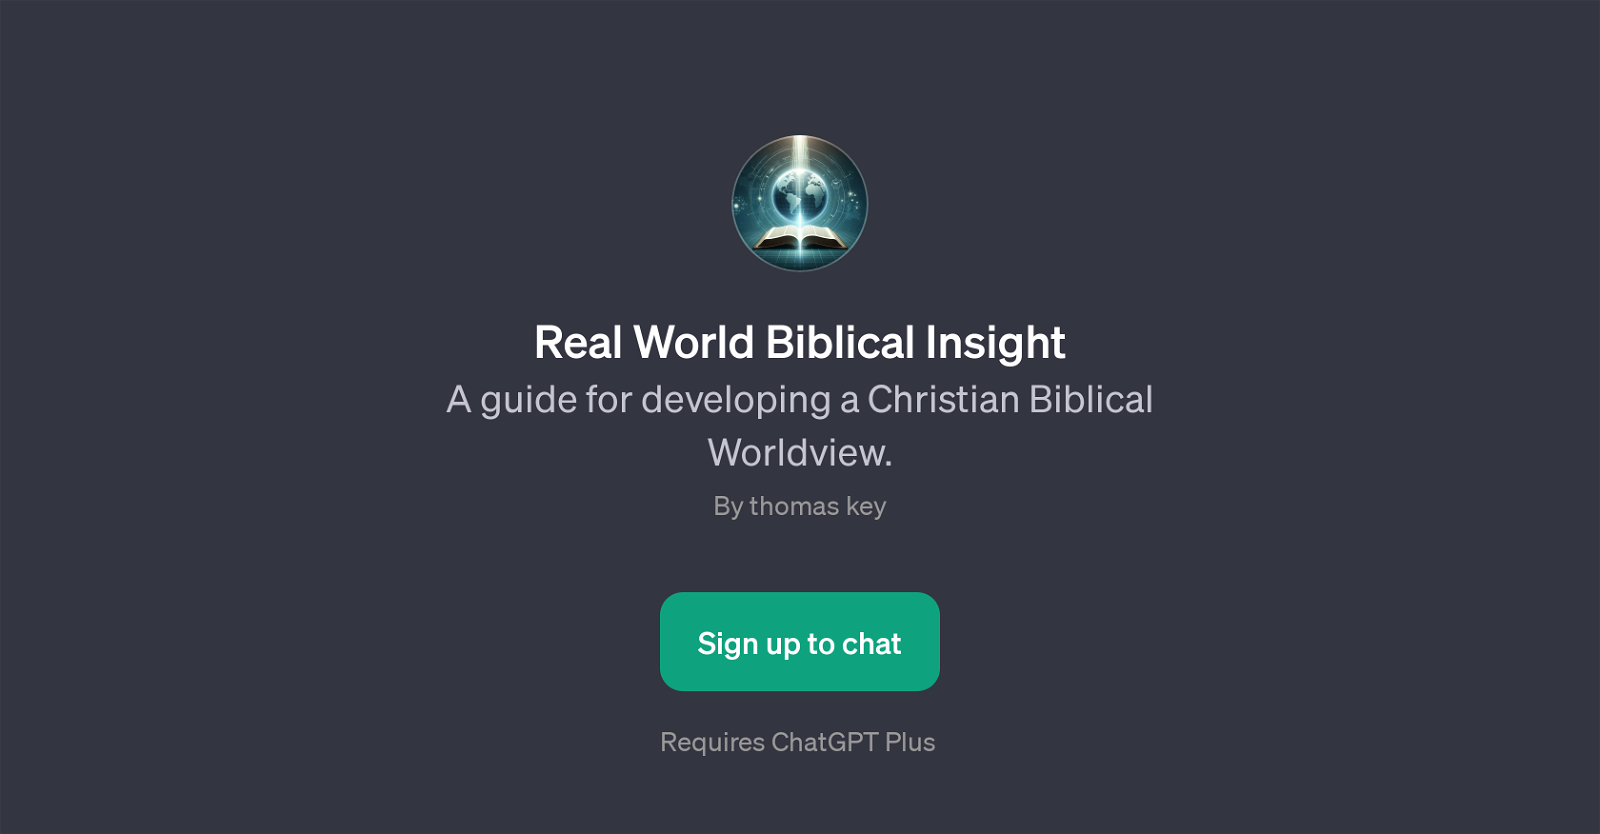 Real World Biblical Insight website